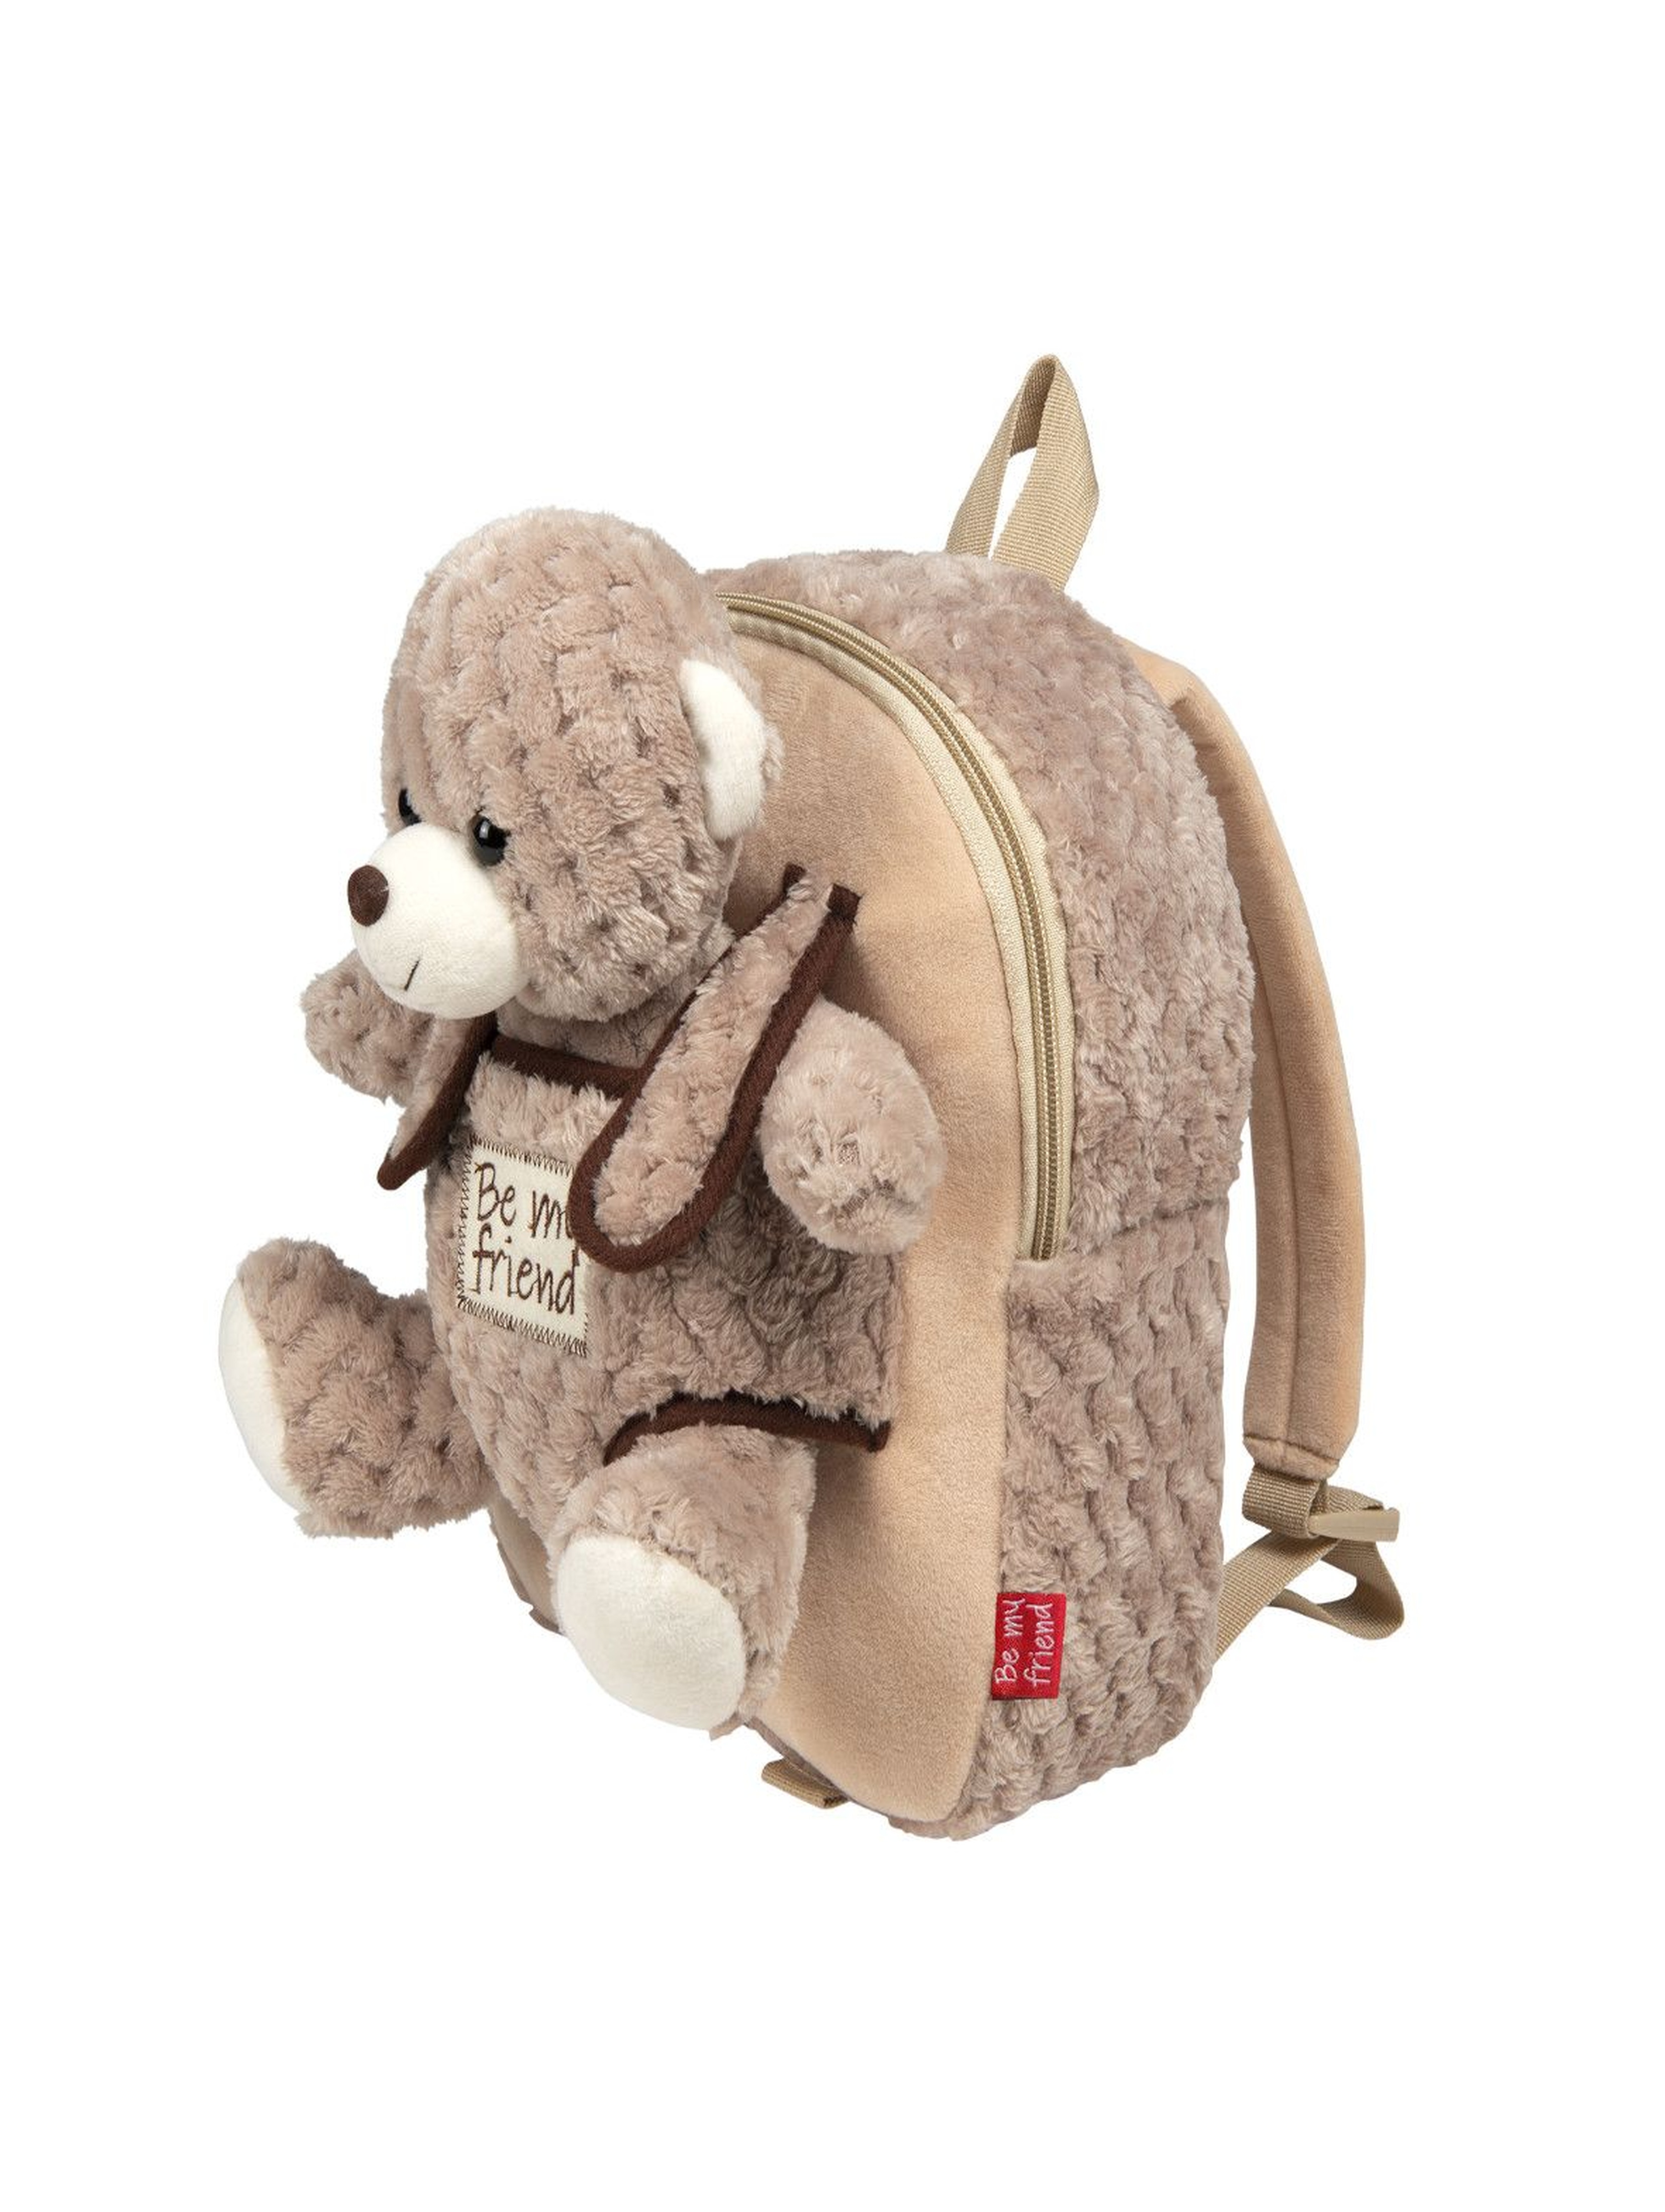 Plecak pluszowy z przytulanką -  Milly Bear wiek 2+